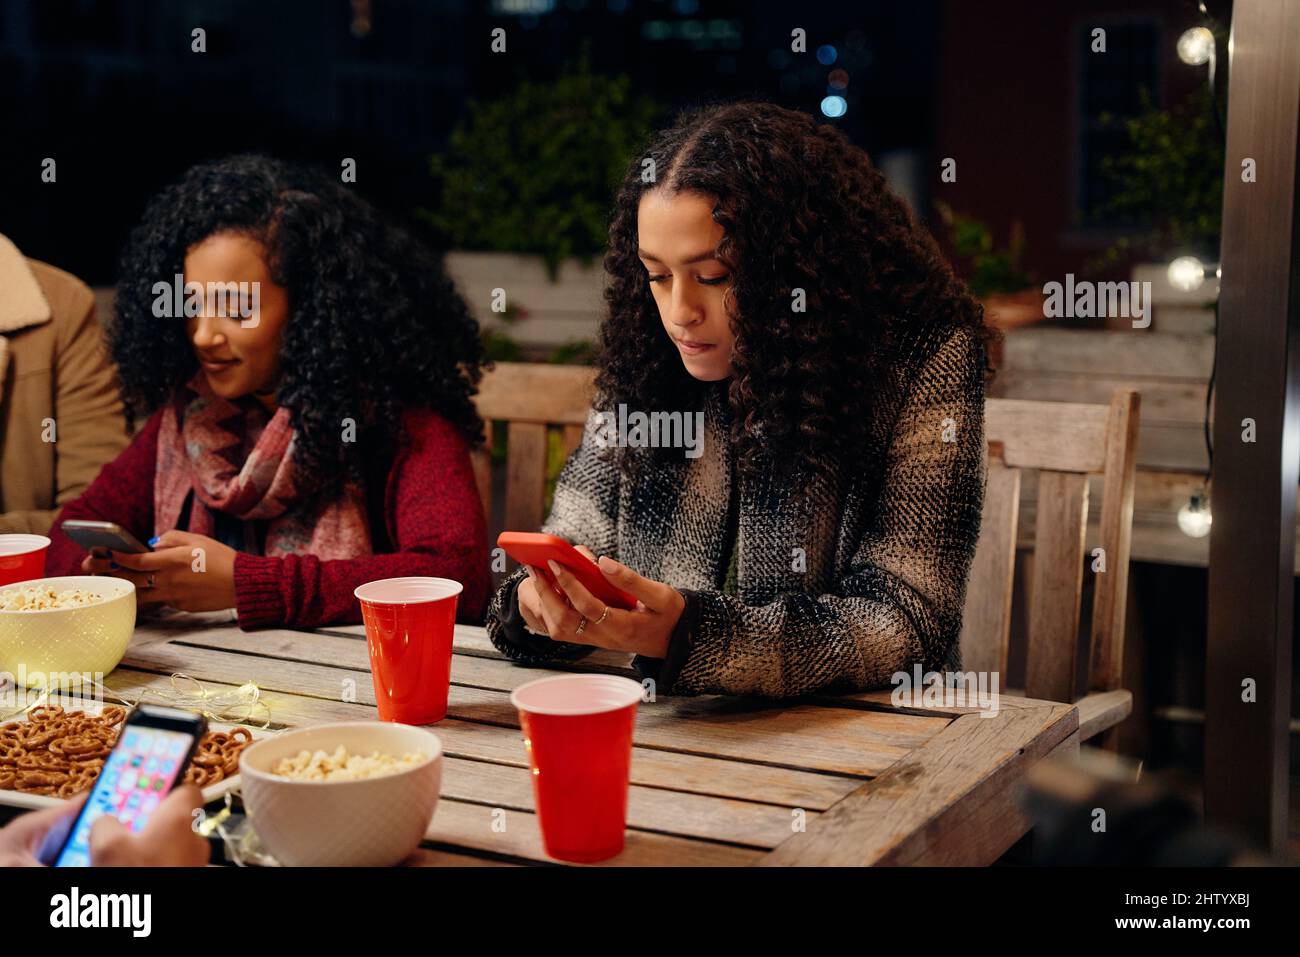 Zwei Frauen mit birazialem jungen Erwachsenen, die auf einer Party sitzen und eine SMS an ihr Telefon senden. Antisozial, mit Technologie auf der Dachparty Stockfoto